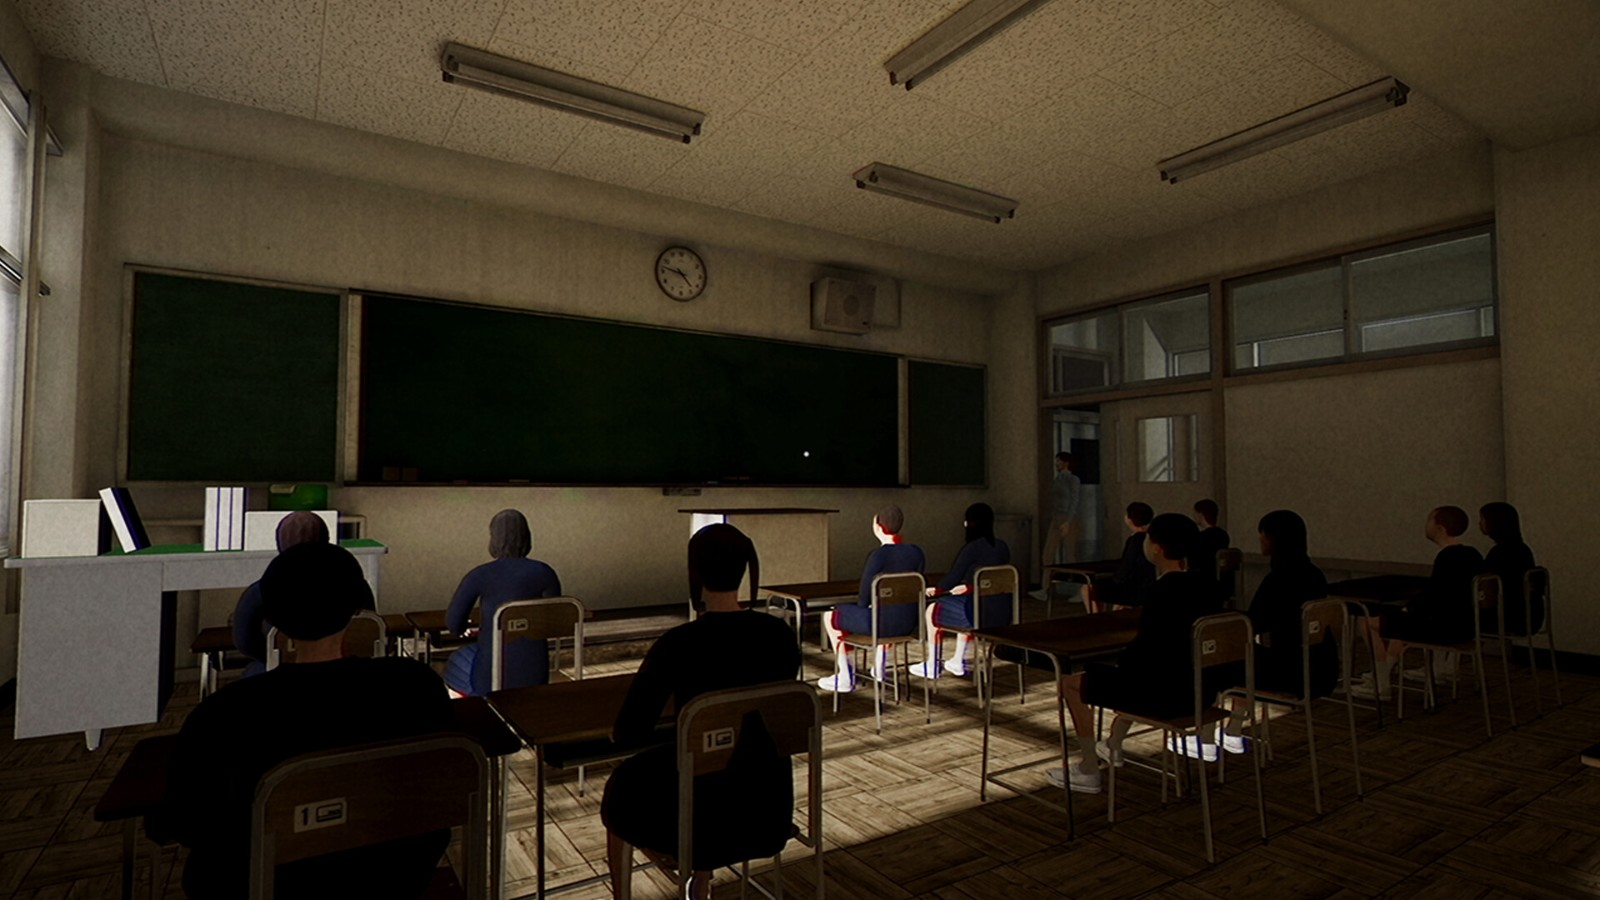 日式恐怖游戏《誘拐事件》上线Steam页面